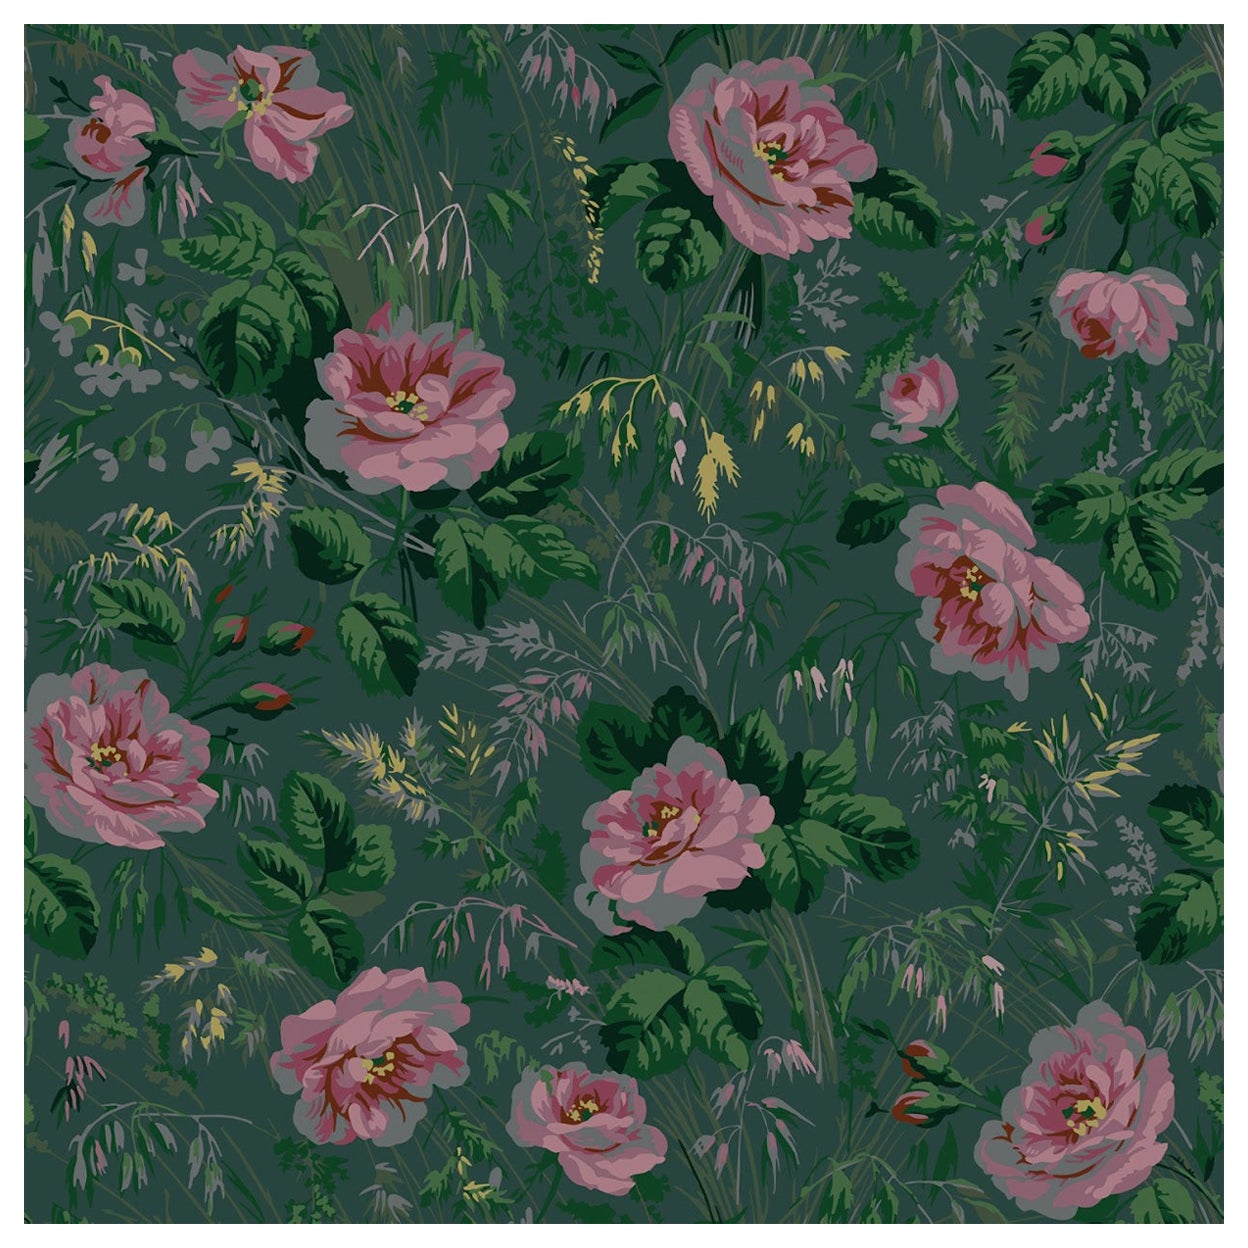 'Roses de Monet‘ wallpaper by Papier Français, collection BNF N°1 For Sale